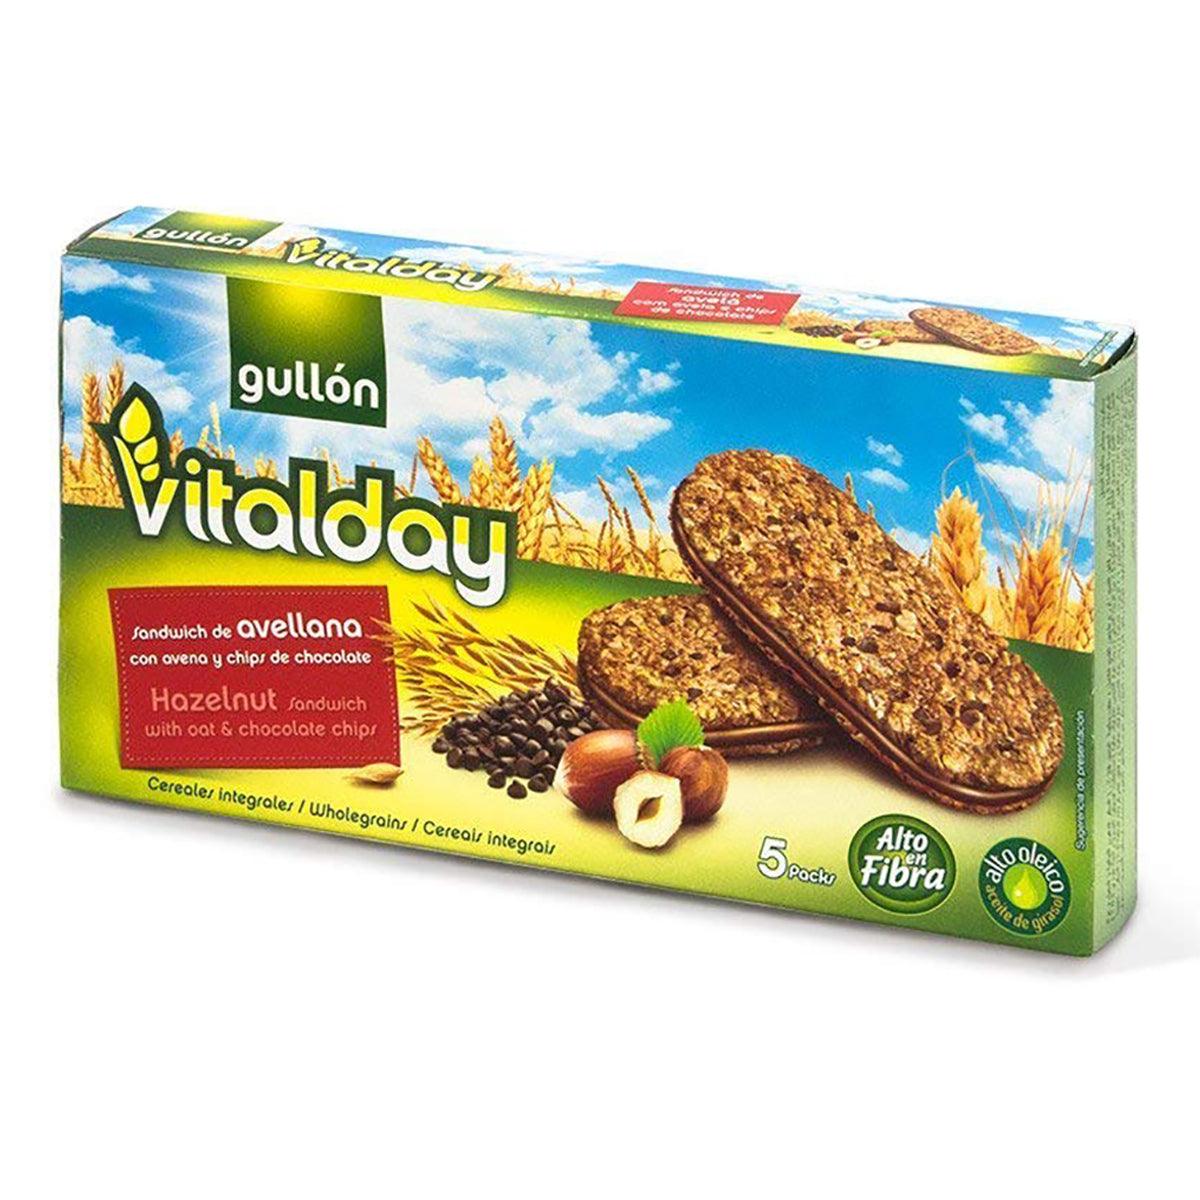 Gullon Vitalday Hazenut Crnch Bis Seabra – Foods 7.76oz Online